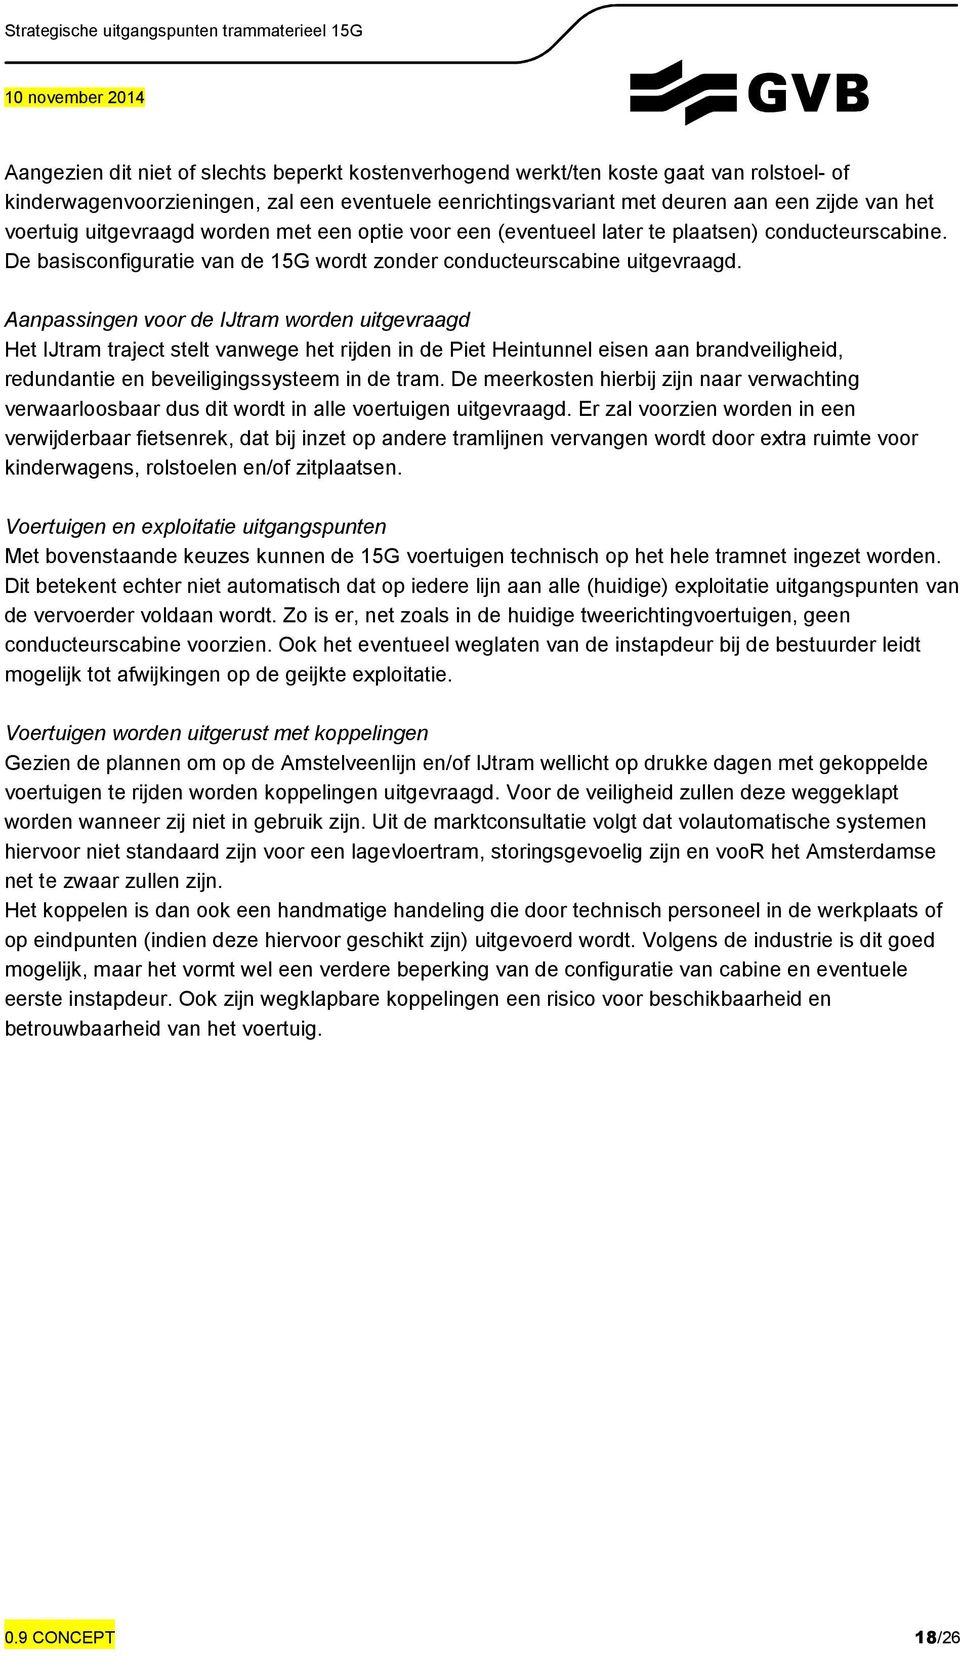 Aanpassingen voor de IJtram worden uitgevraagd Het IJtram traject stelt vanwege het rijden in de Piet Heintunnel eisen aan brandveiligheid, redundantie en beveiligingssysteem in de tram.